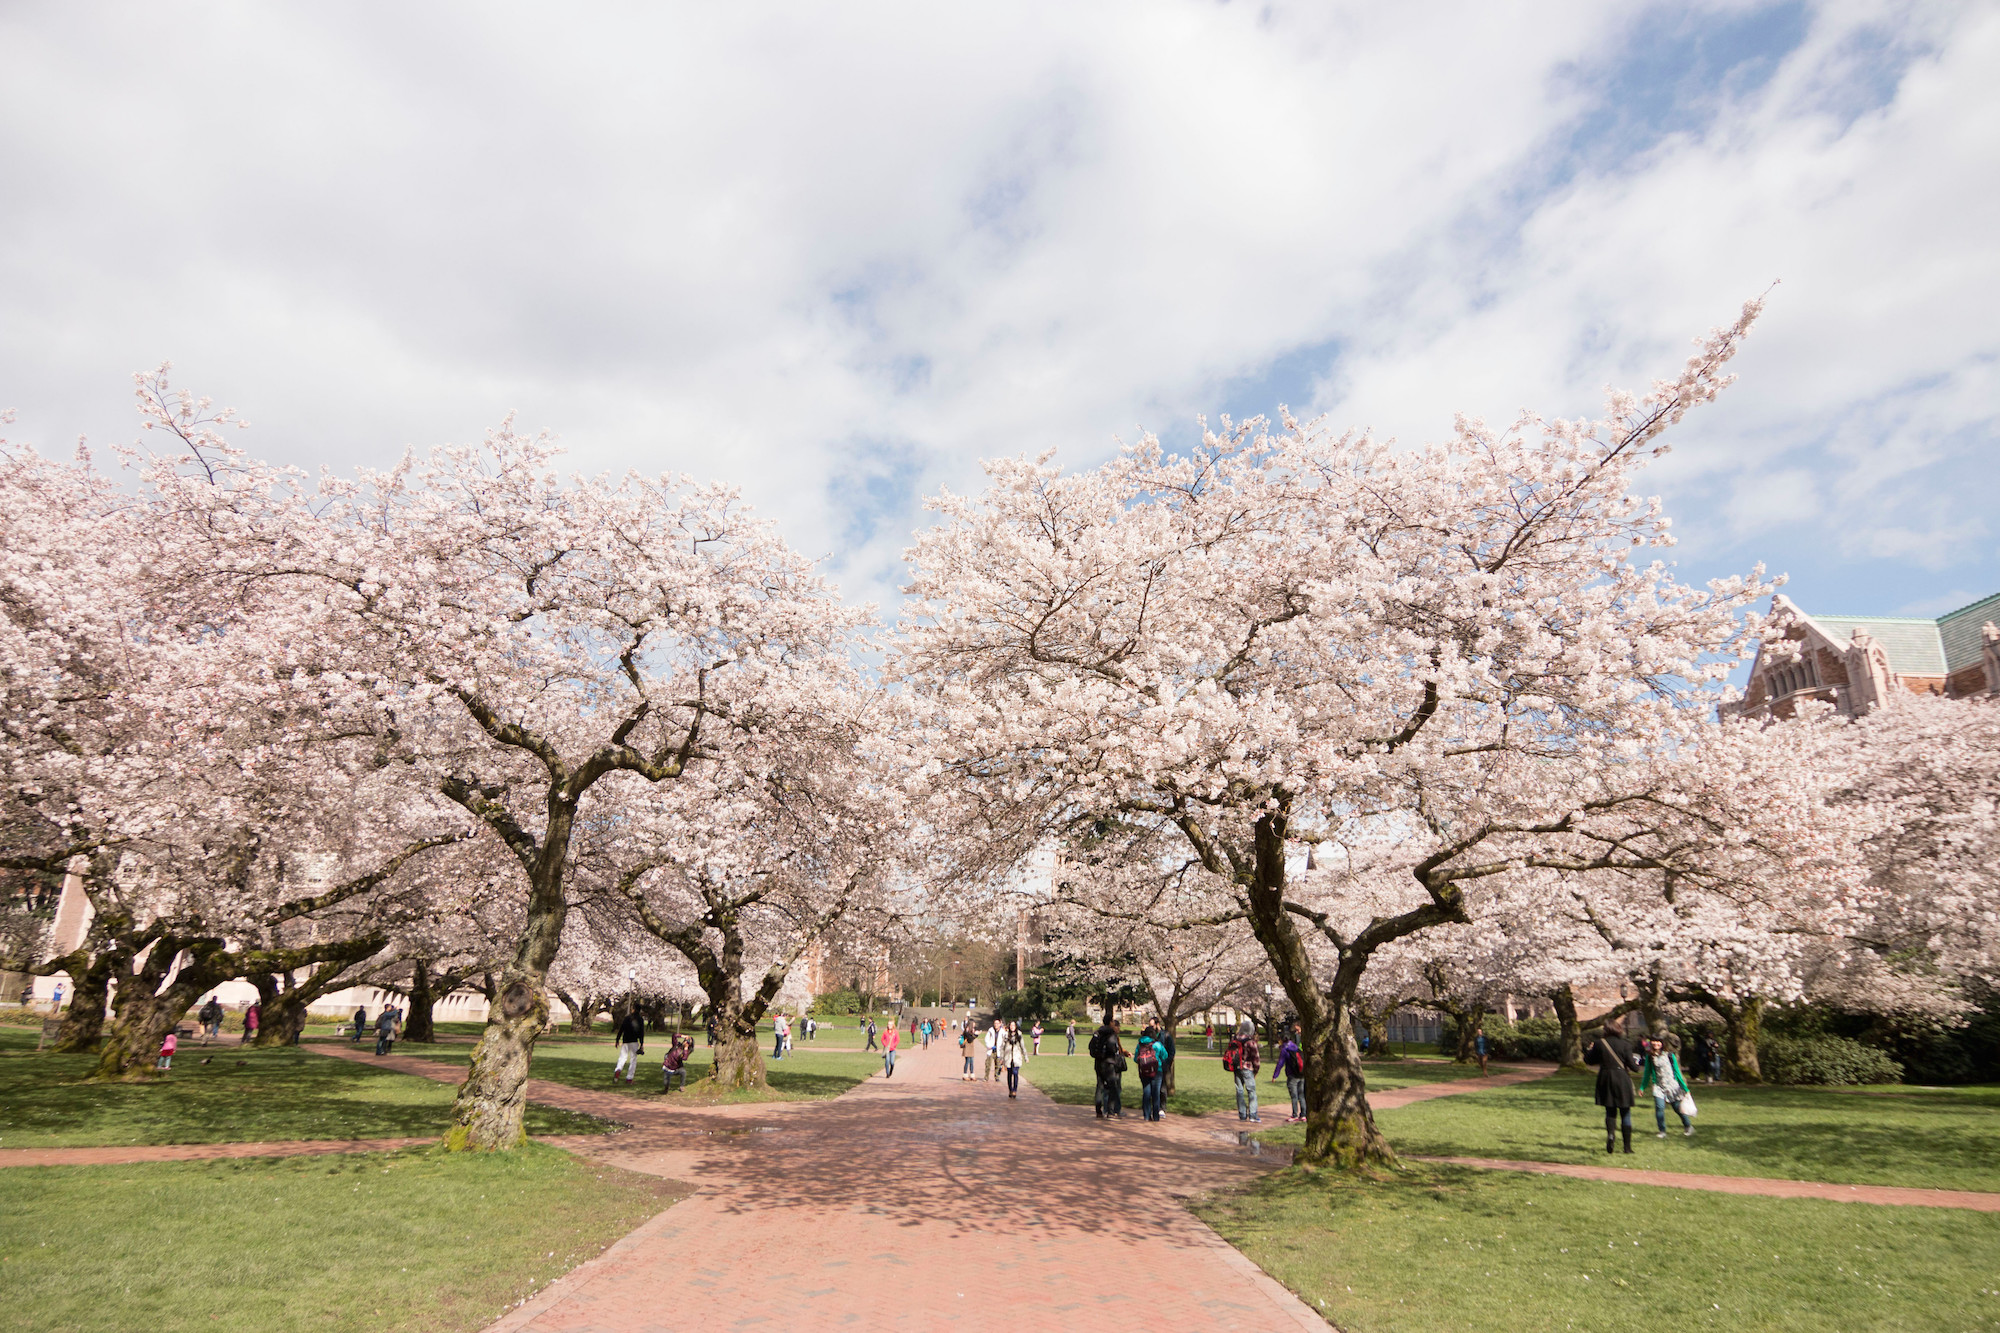 Cherry blossoms on UW's Quad